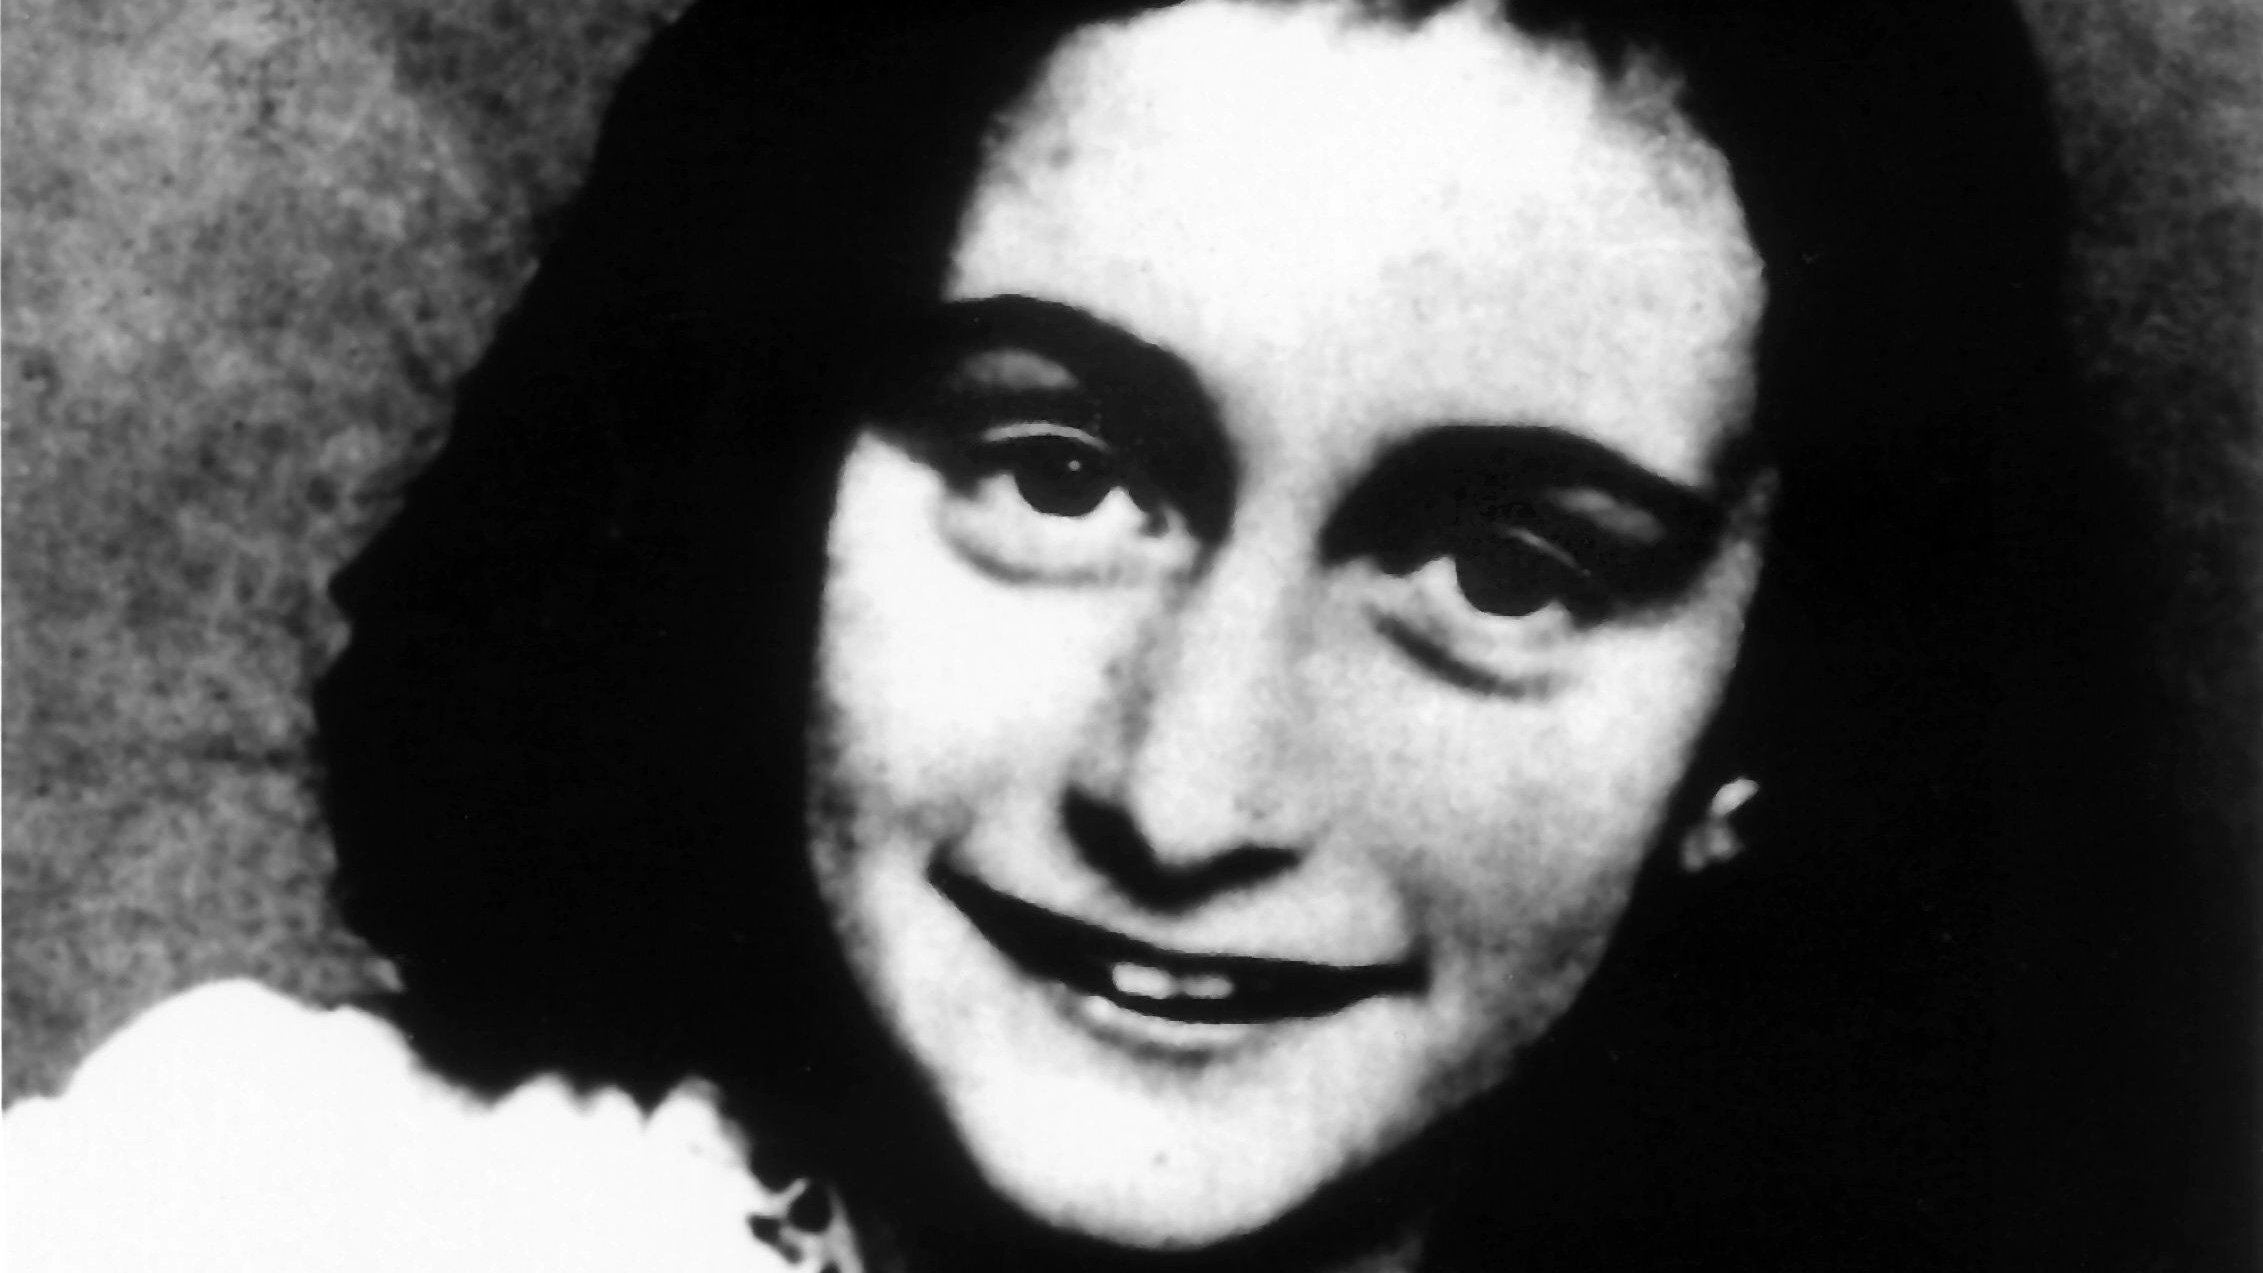 Die Deportation des jüdischen Mädchens Anne Frank, deren Route möglicherweise durch die Grafschaft Bentheim führte, ist Teil eines Forschungsprojektes der Universität Vechta. Foto: dpa